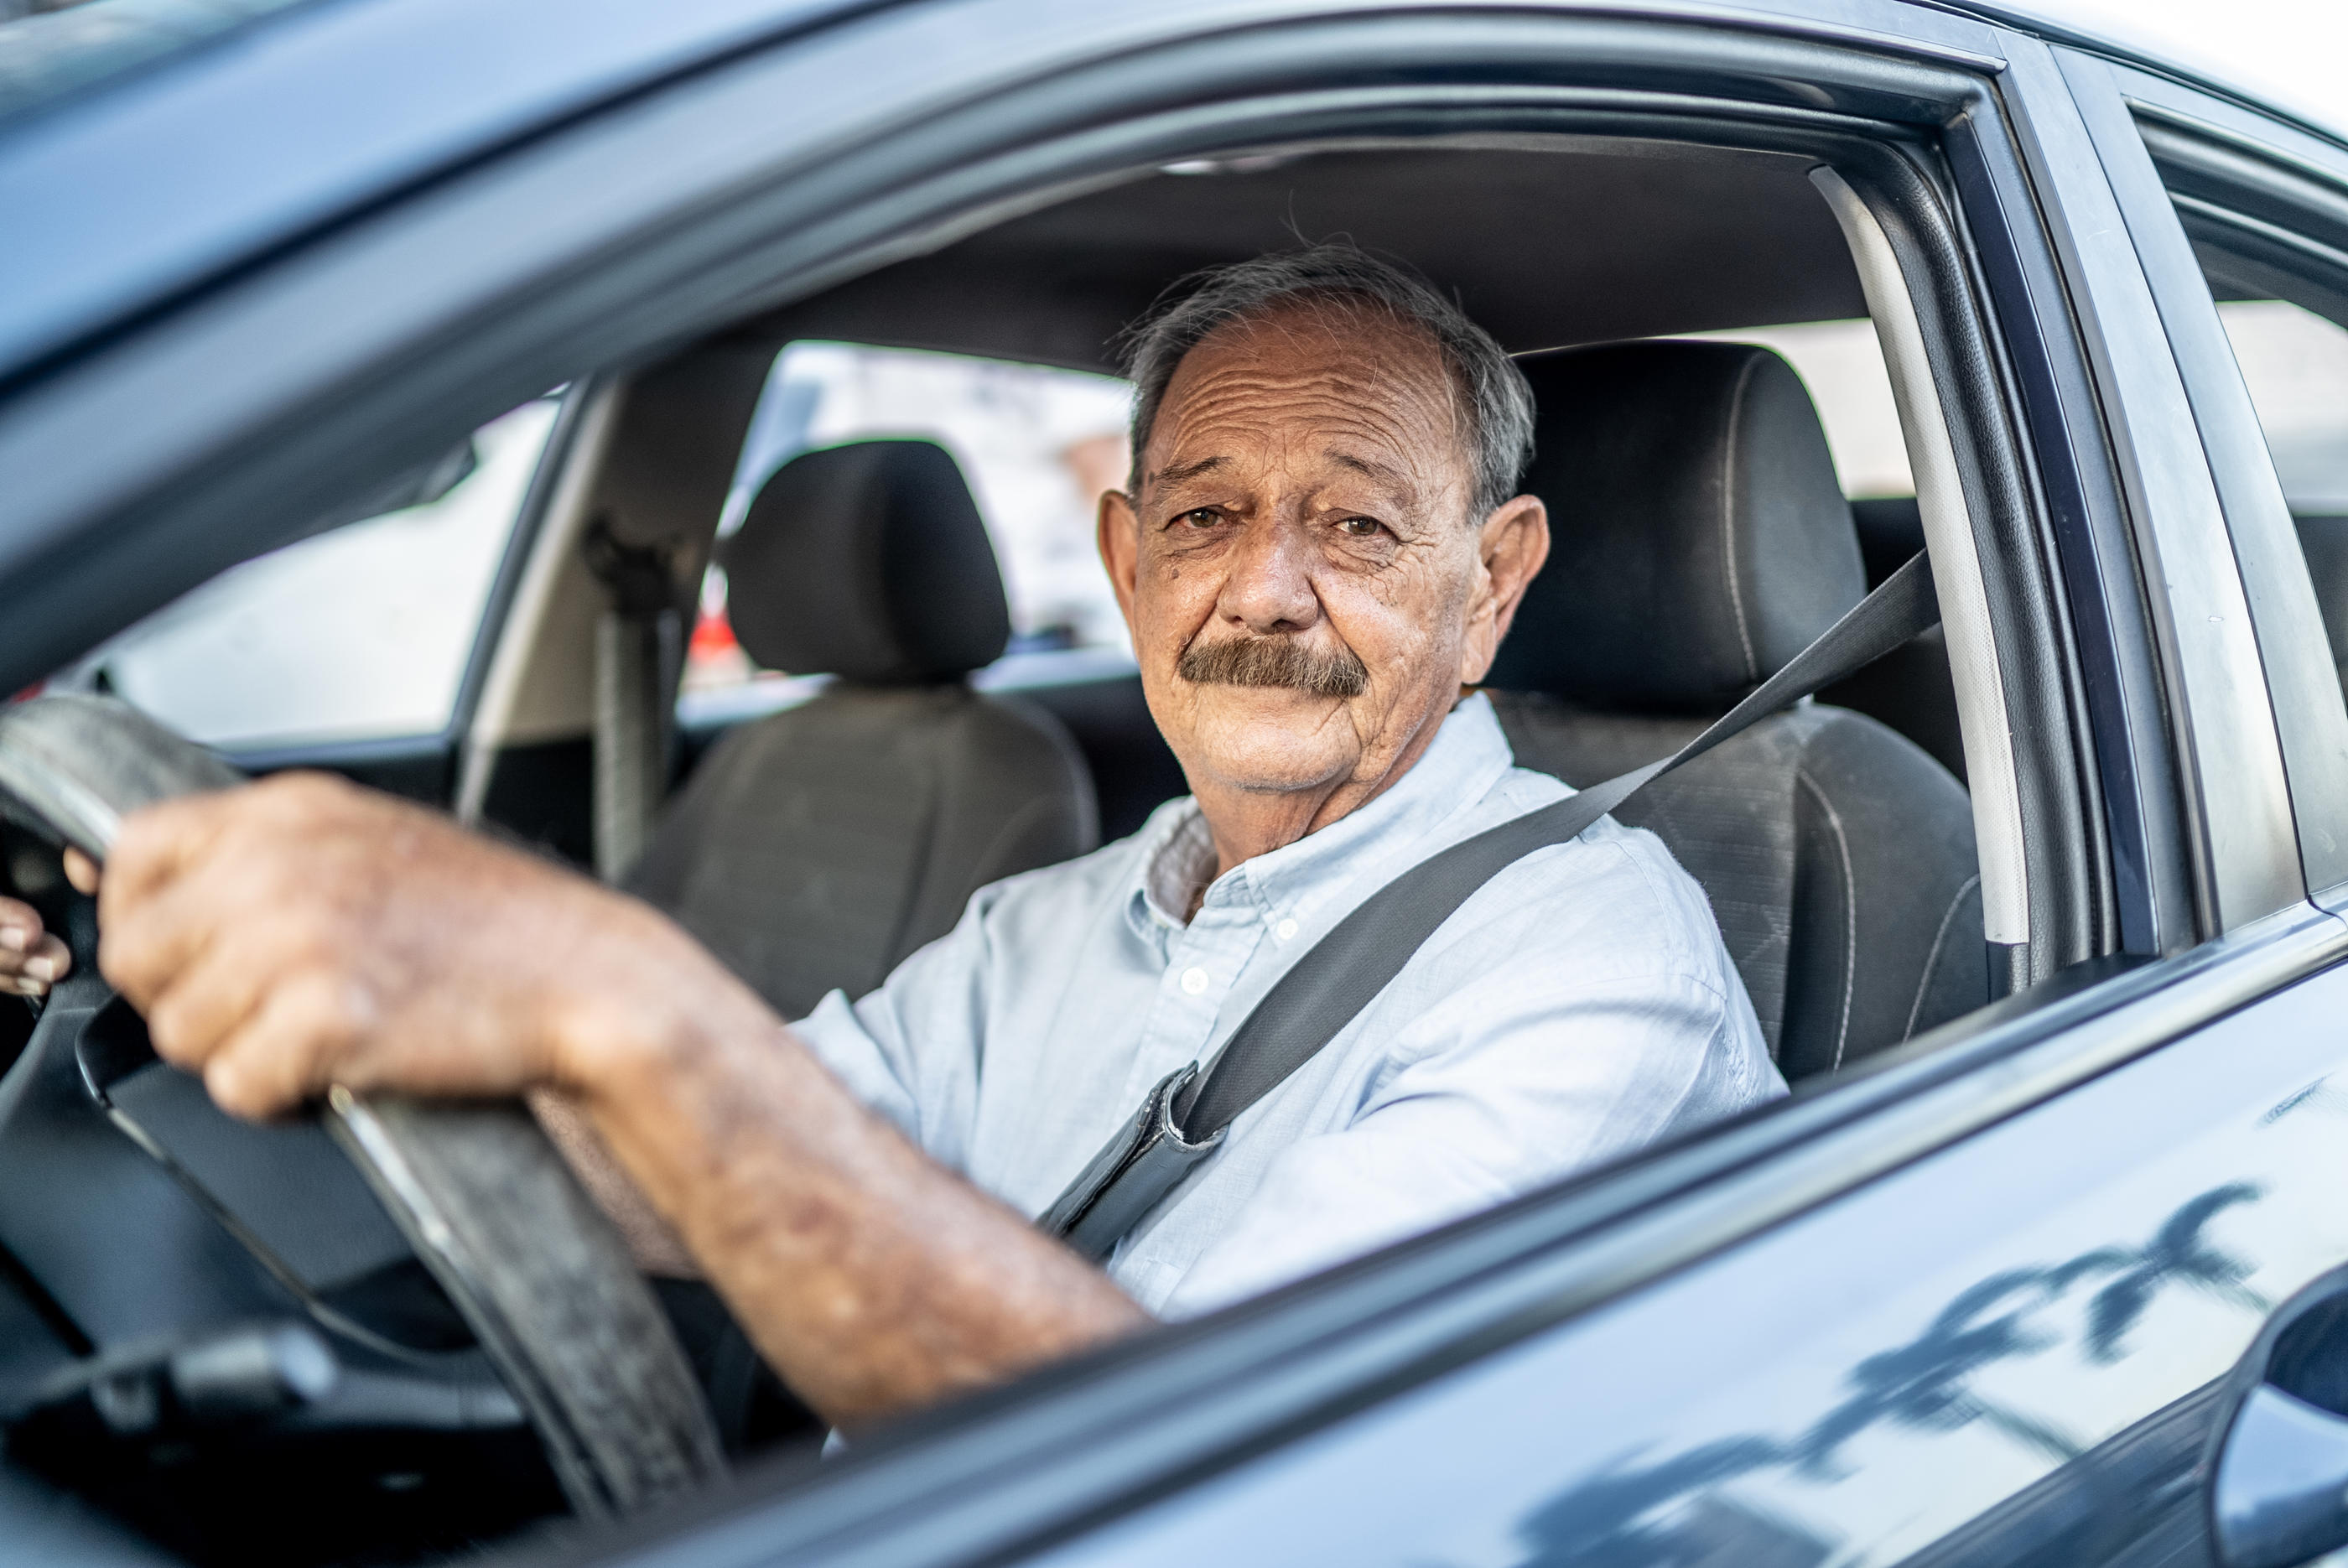 Les personnes âgées de plus de 65 ans ne sont pas les plus touchées dans les accidents, mais les facteurs qui leur sont imputés sont différents du reste de la population. (Illustration) Getty Images/FG Trade Latin